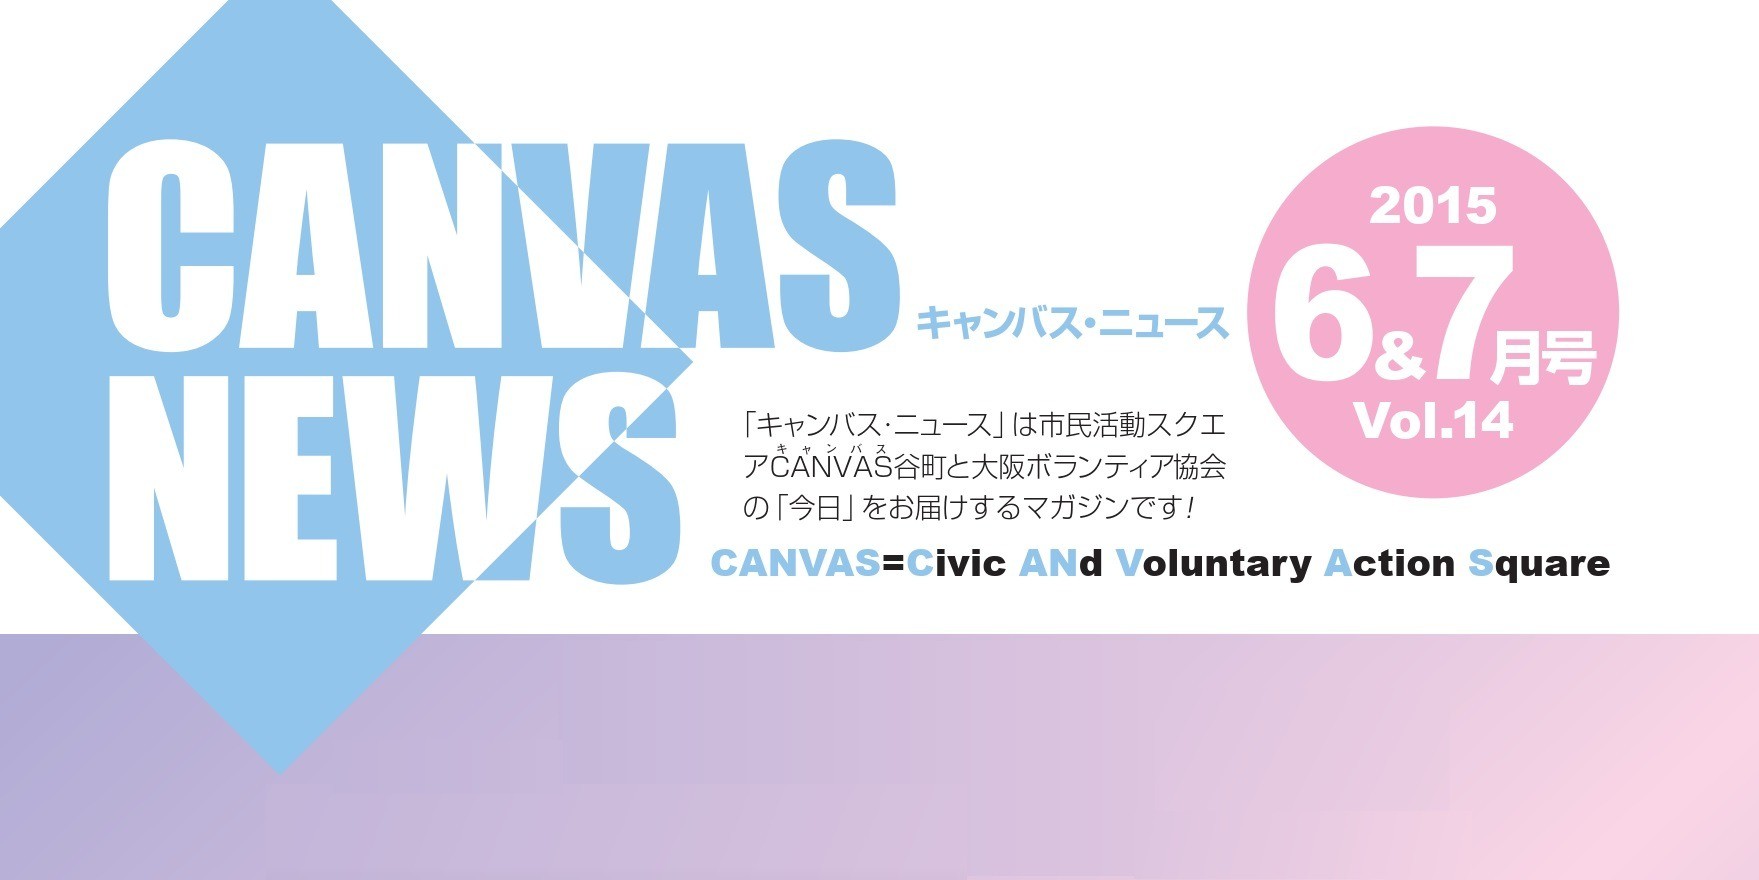 【CANVAS NEWS】2015年6・7月号